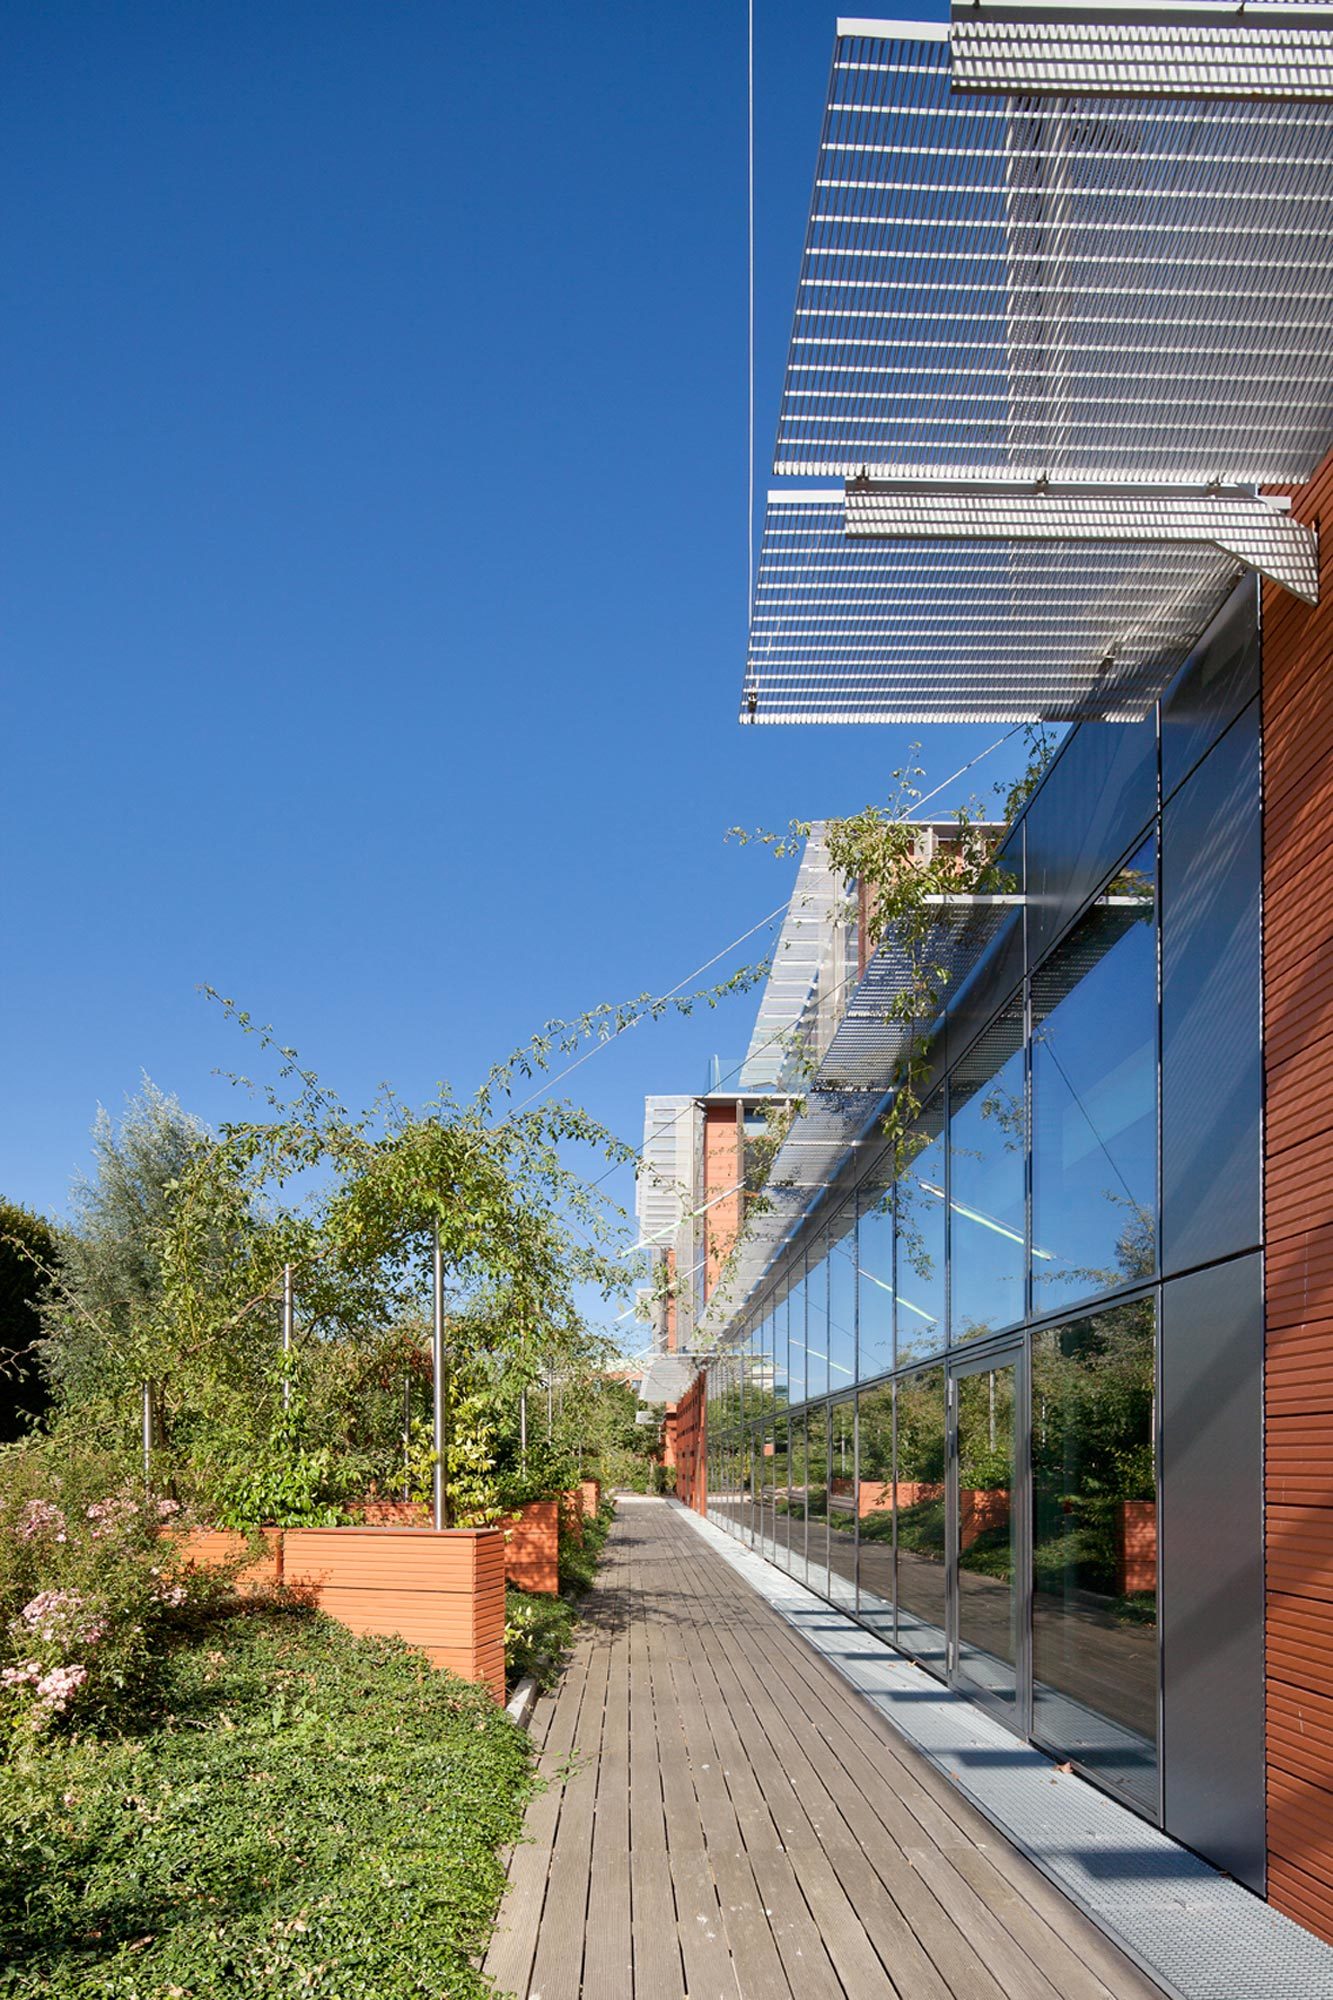 Terrasse végétalisée, Axe promotion, Chevilly-Larue, HGA – Hubert Godet Architectes